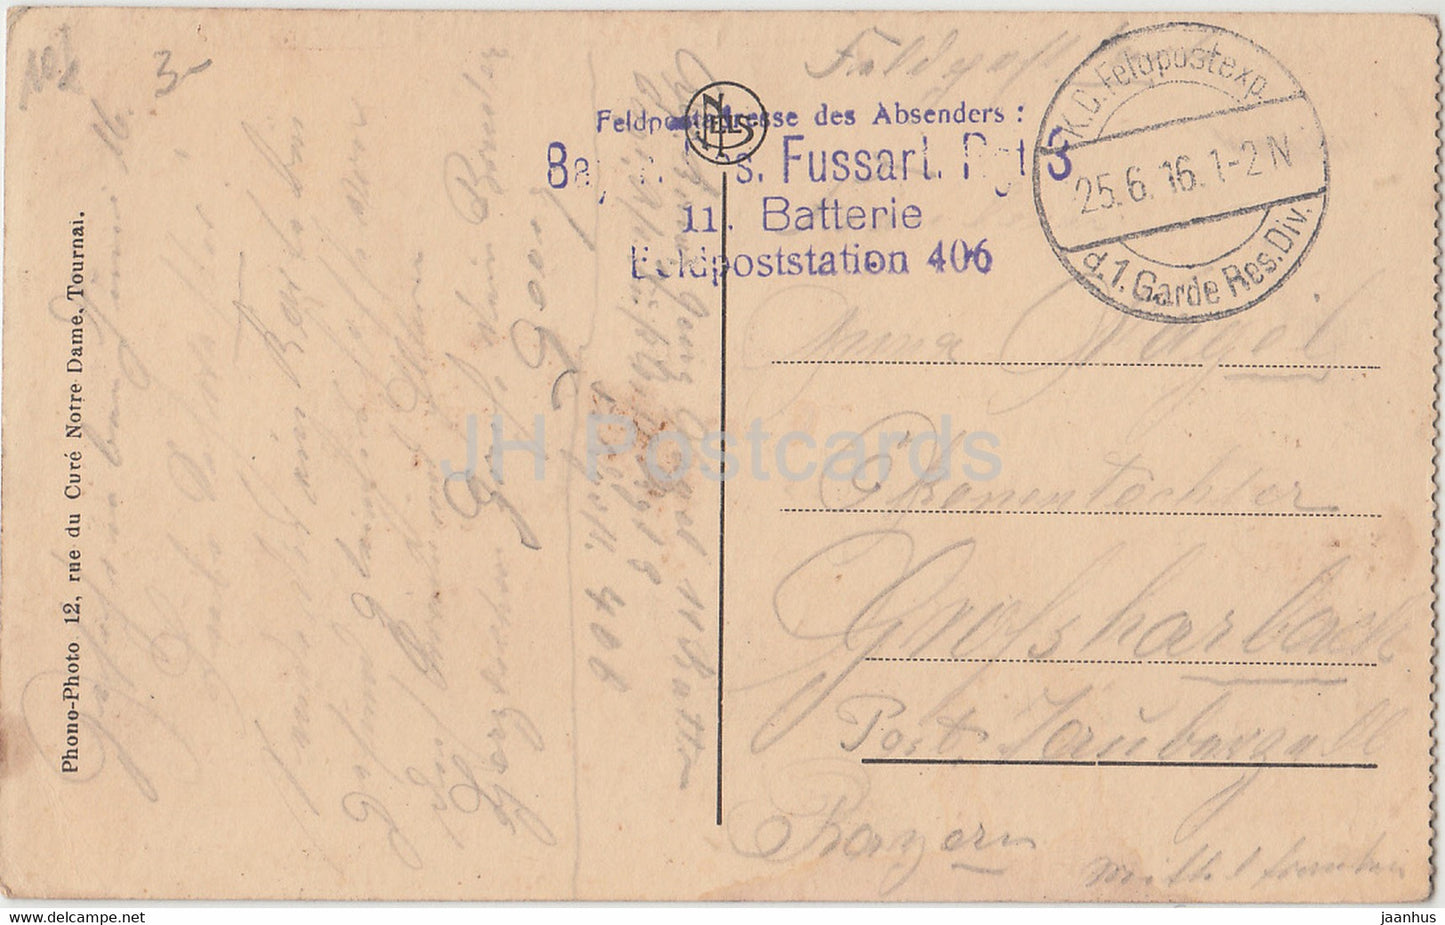 Douai – Hotel de Ville – Salle Gothique – Bayr. Res.-Fussart.-Rgt. Feldpost - alte Postkarte - 1916 - Frankreich - gebraucht